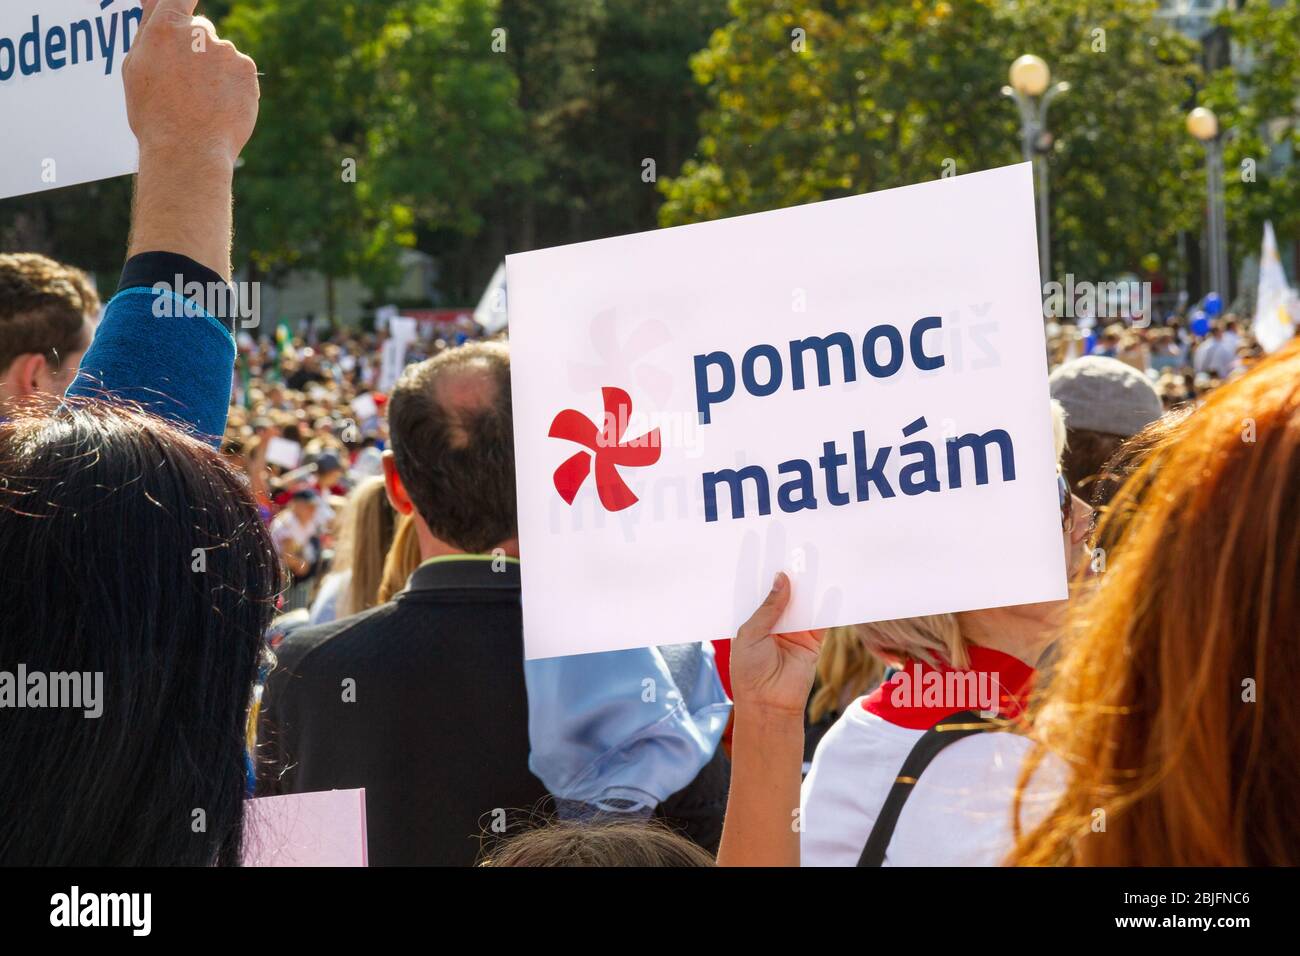 Bratislava, Slovacchia. 2019/9/22. Un cartello con le parole "pomoc matkam" (che significa "aiuto per le madri" in slovacco) durante una marcia per la vita. Foto Stock